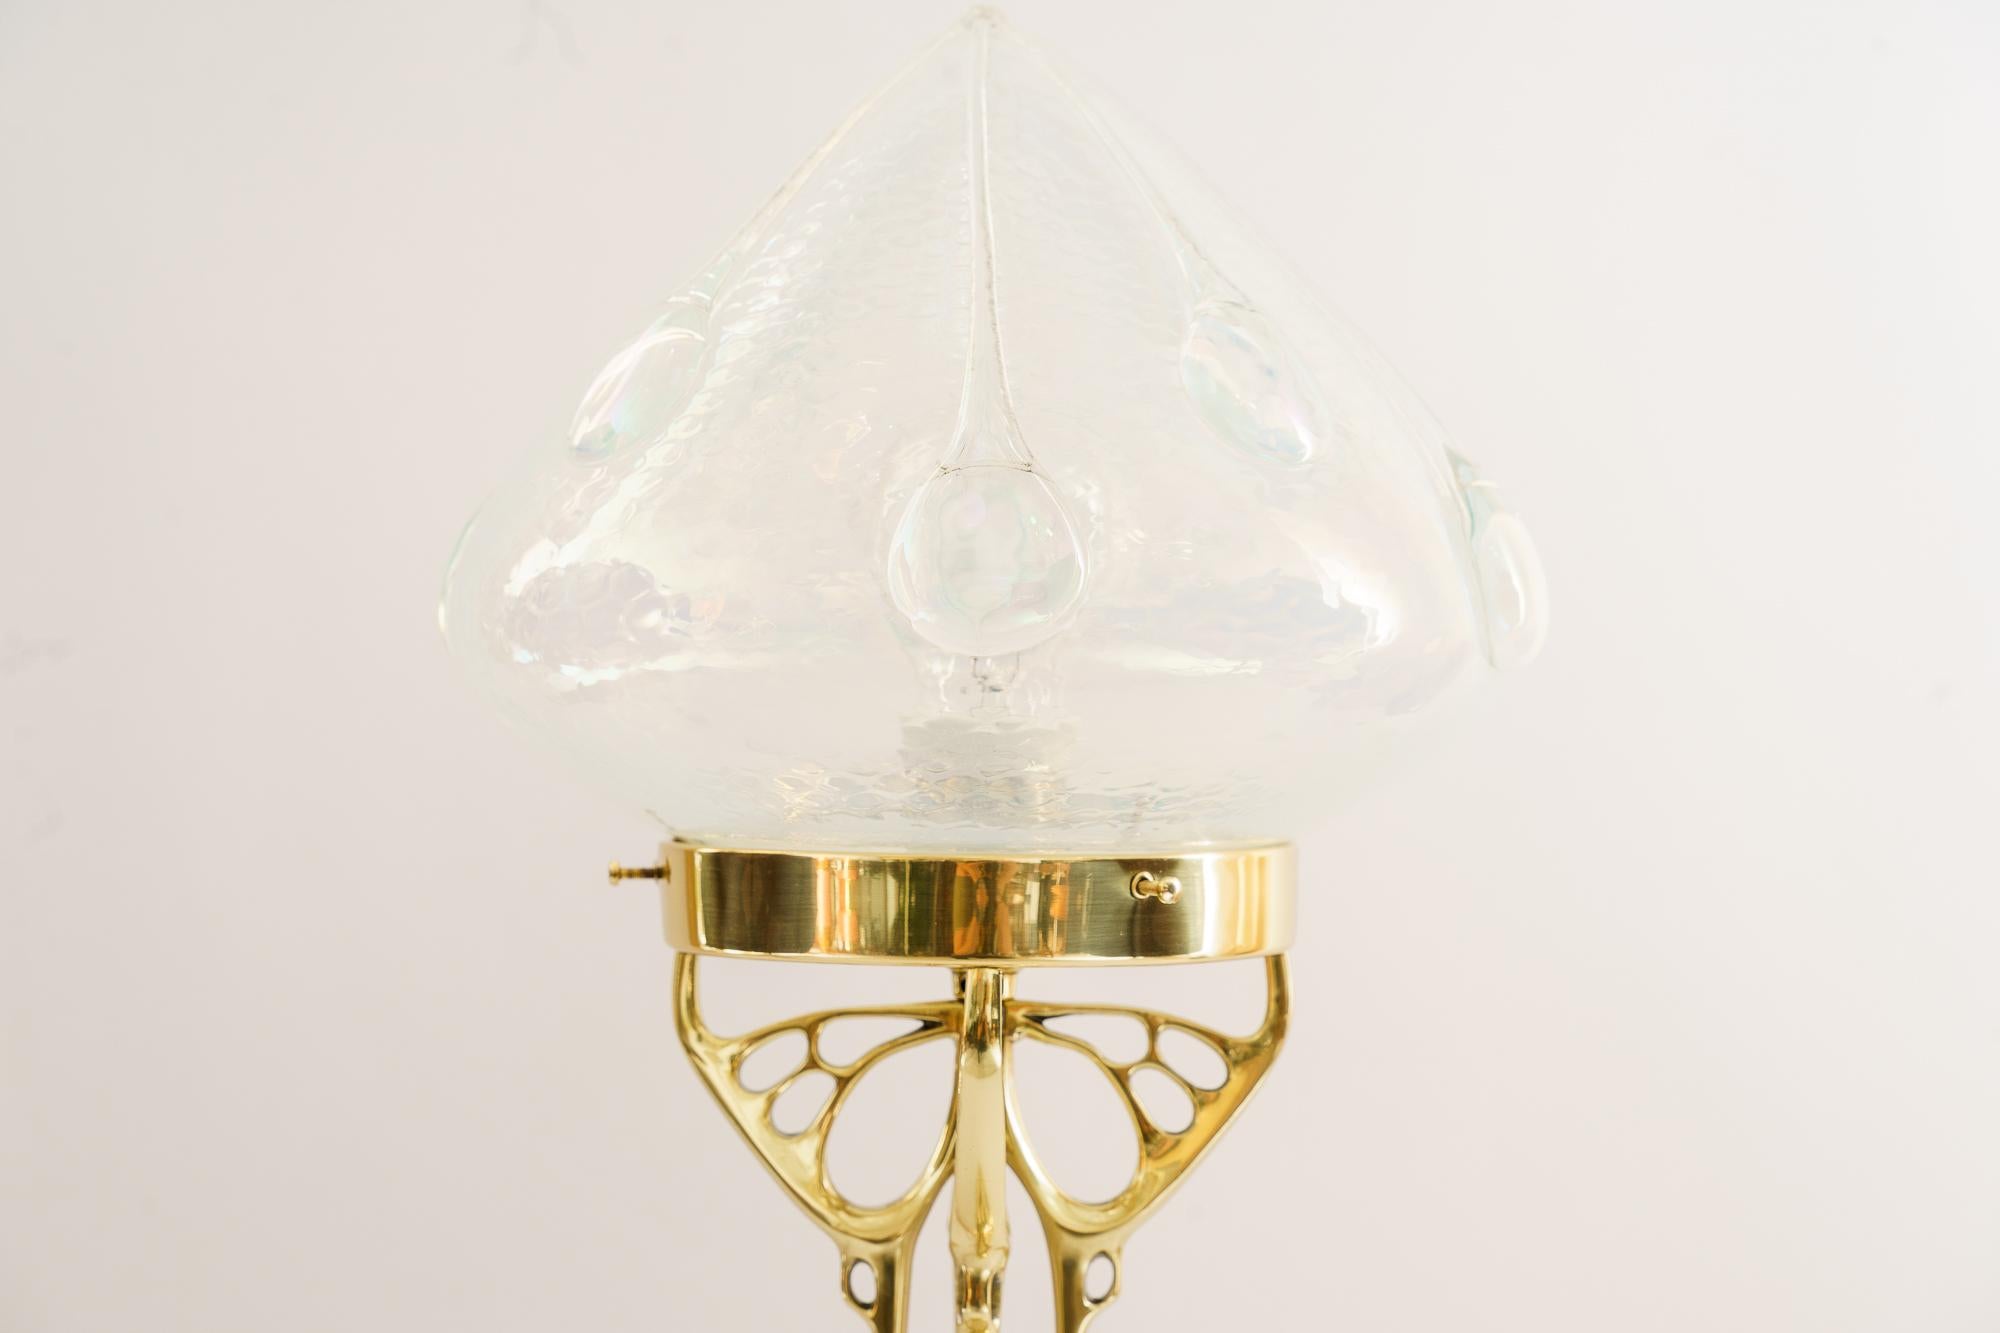 Jugendstil-Tischlampe mit originalem Opalglasschirm Vienna aus der Zeit um 1910 
Messing poliert und emailliert
